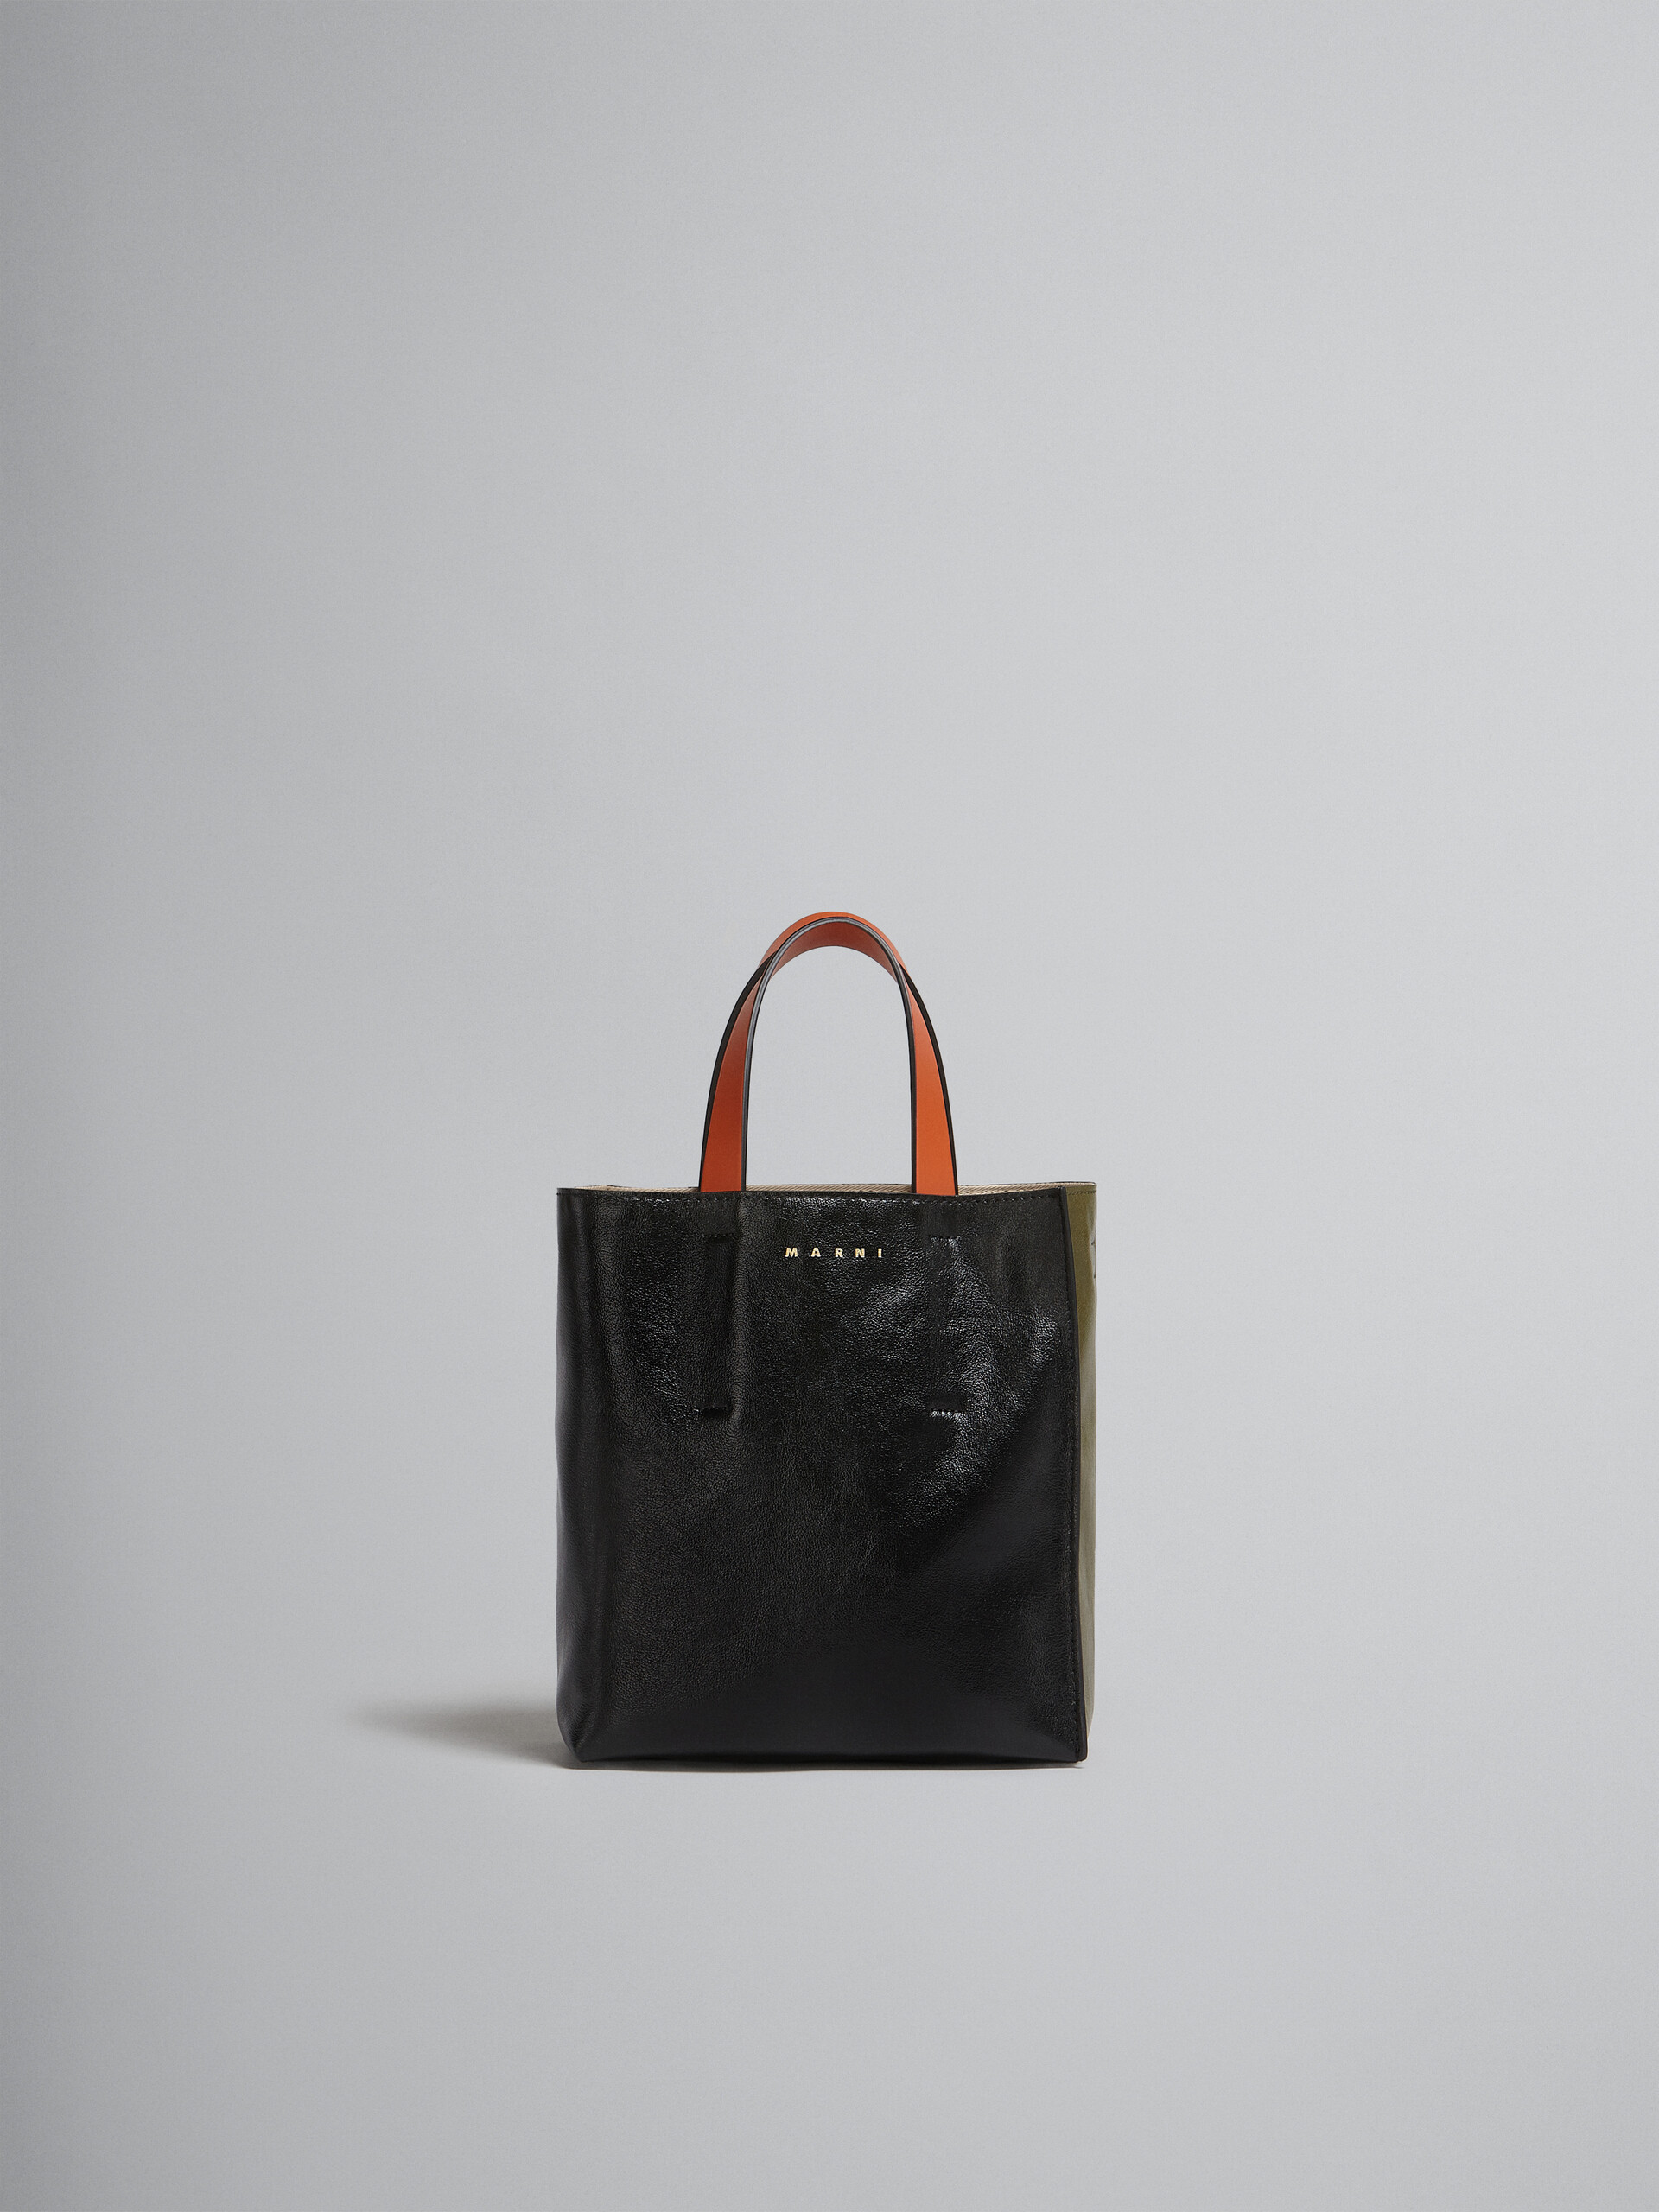 Mini-Tasche Museo Soft aus Leder in Grau, Schwarz und Rot - Shopper - Image 1